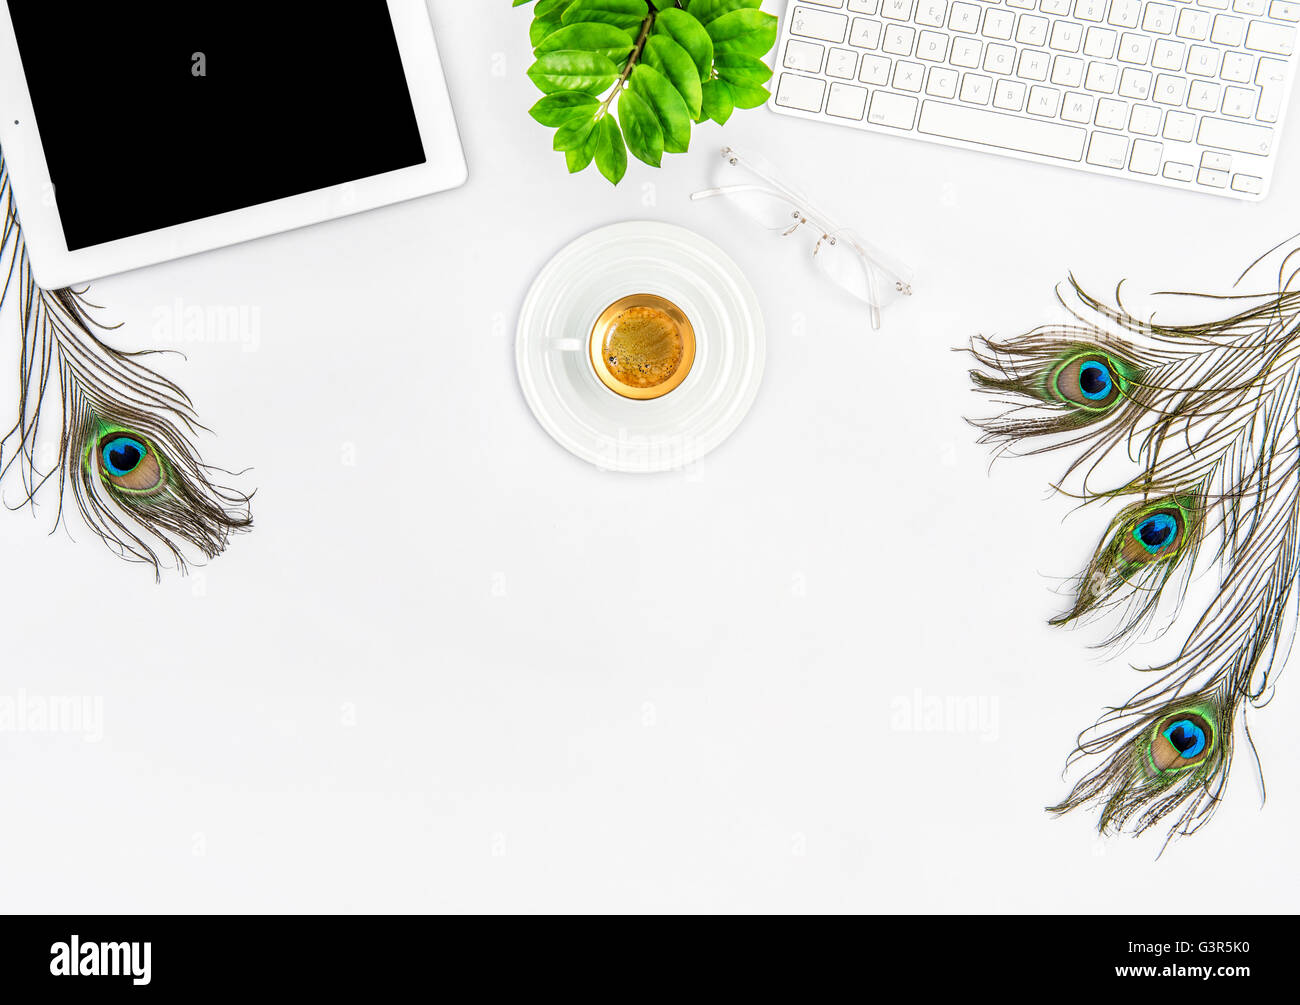 Arbeitsplatz mit Tastatur, TabletPC, Kaffee, grüne Pflanze. Büro-Schreibtisch weiß-Hintergrund Stockfoto